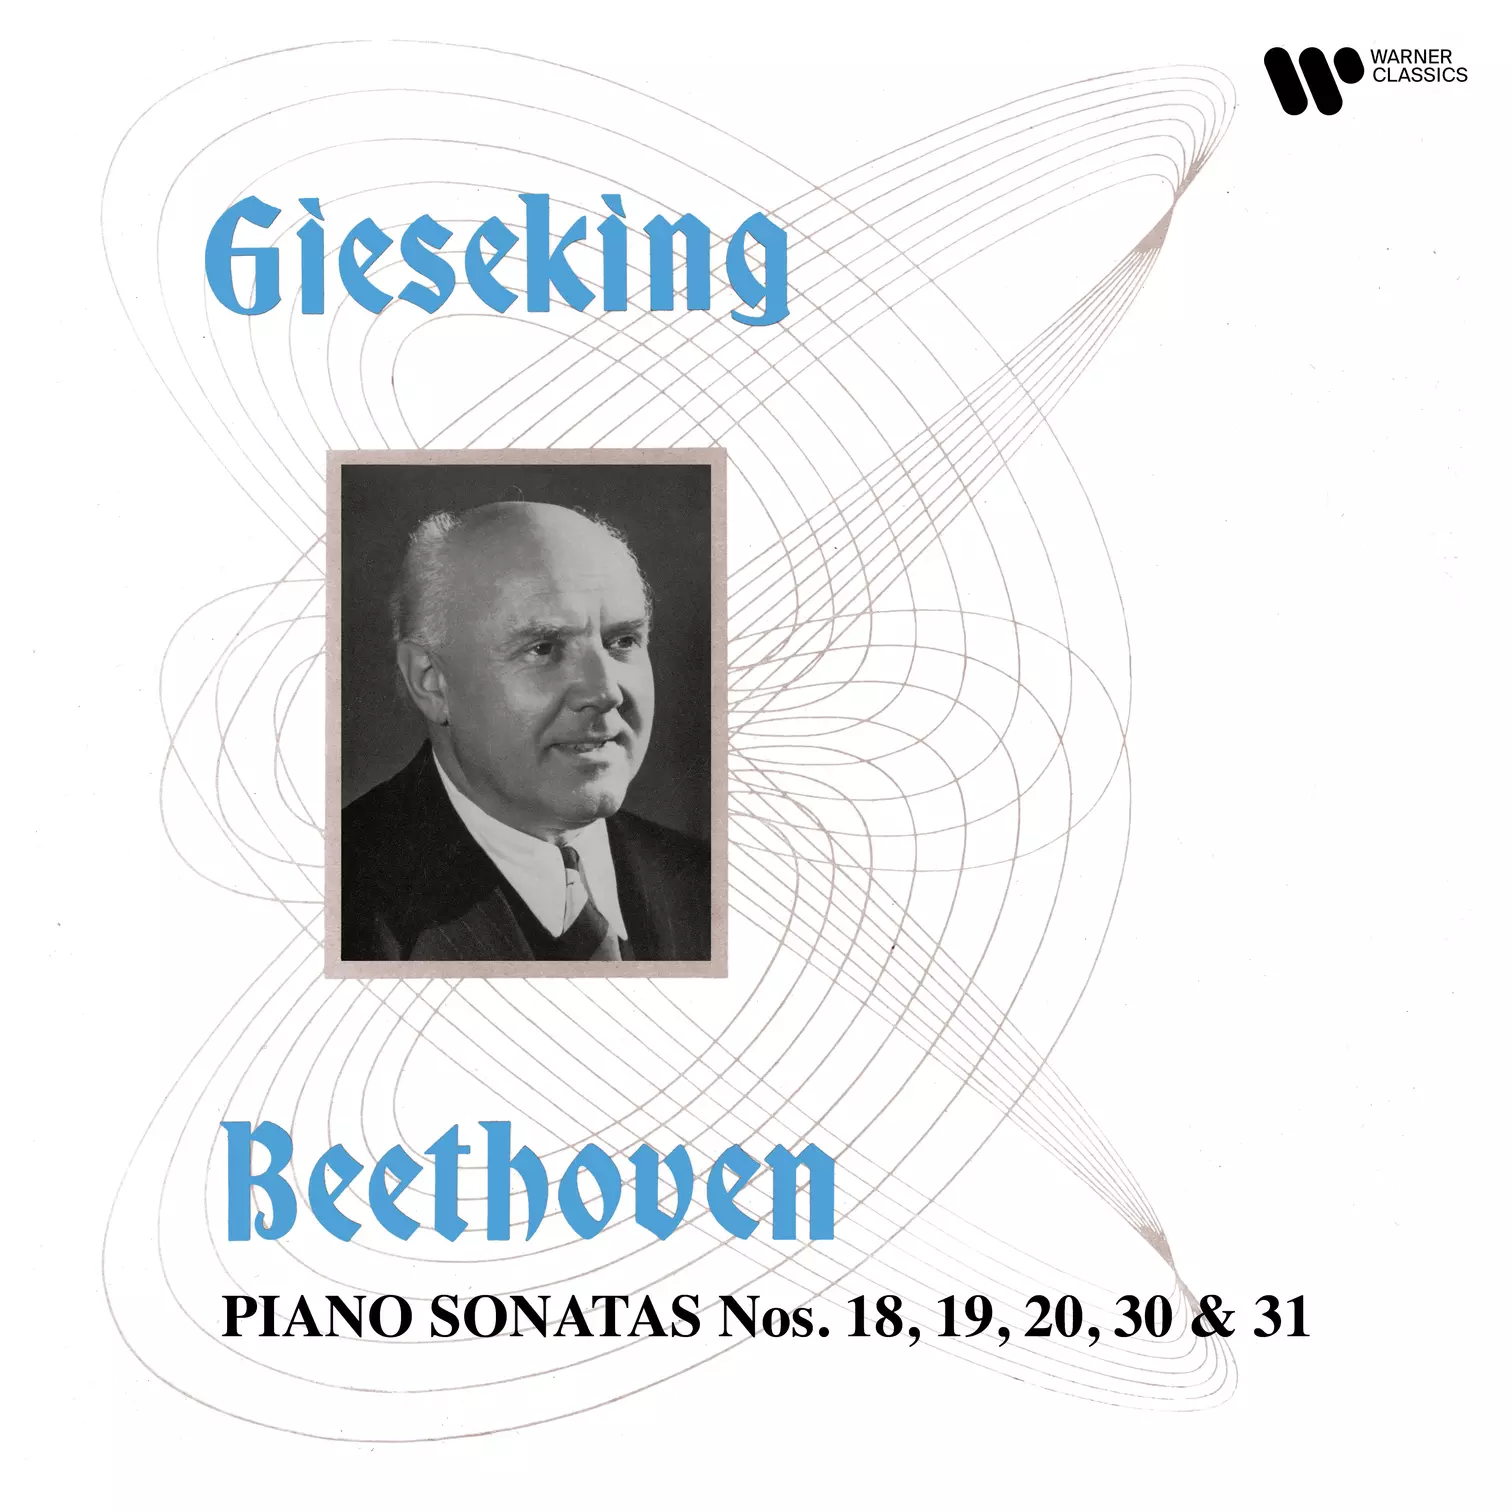 Walter Gieseking - Beethoven: Piano Sonatas Nos. 18, 19, 20, 30 & 31